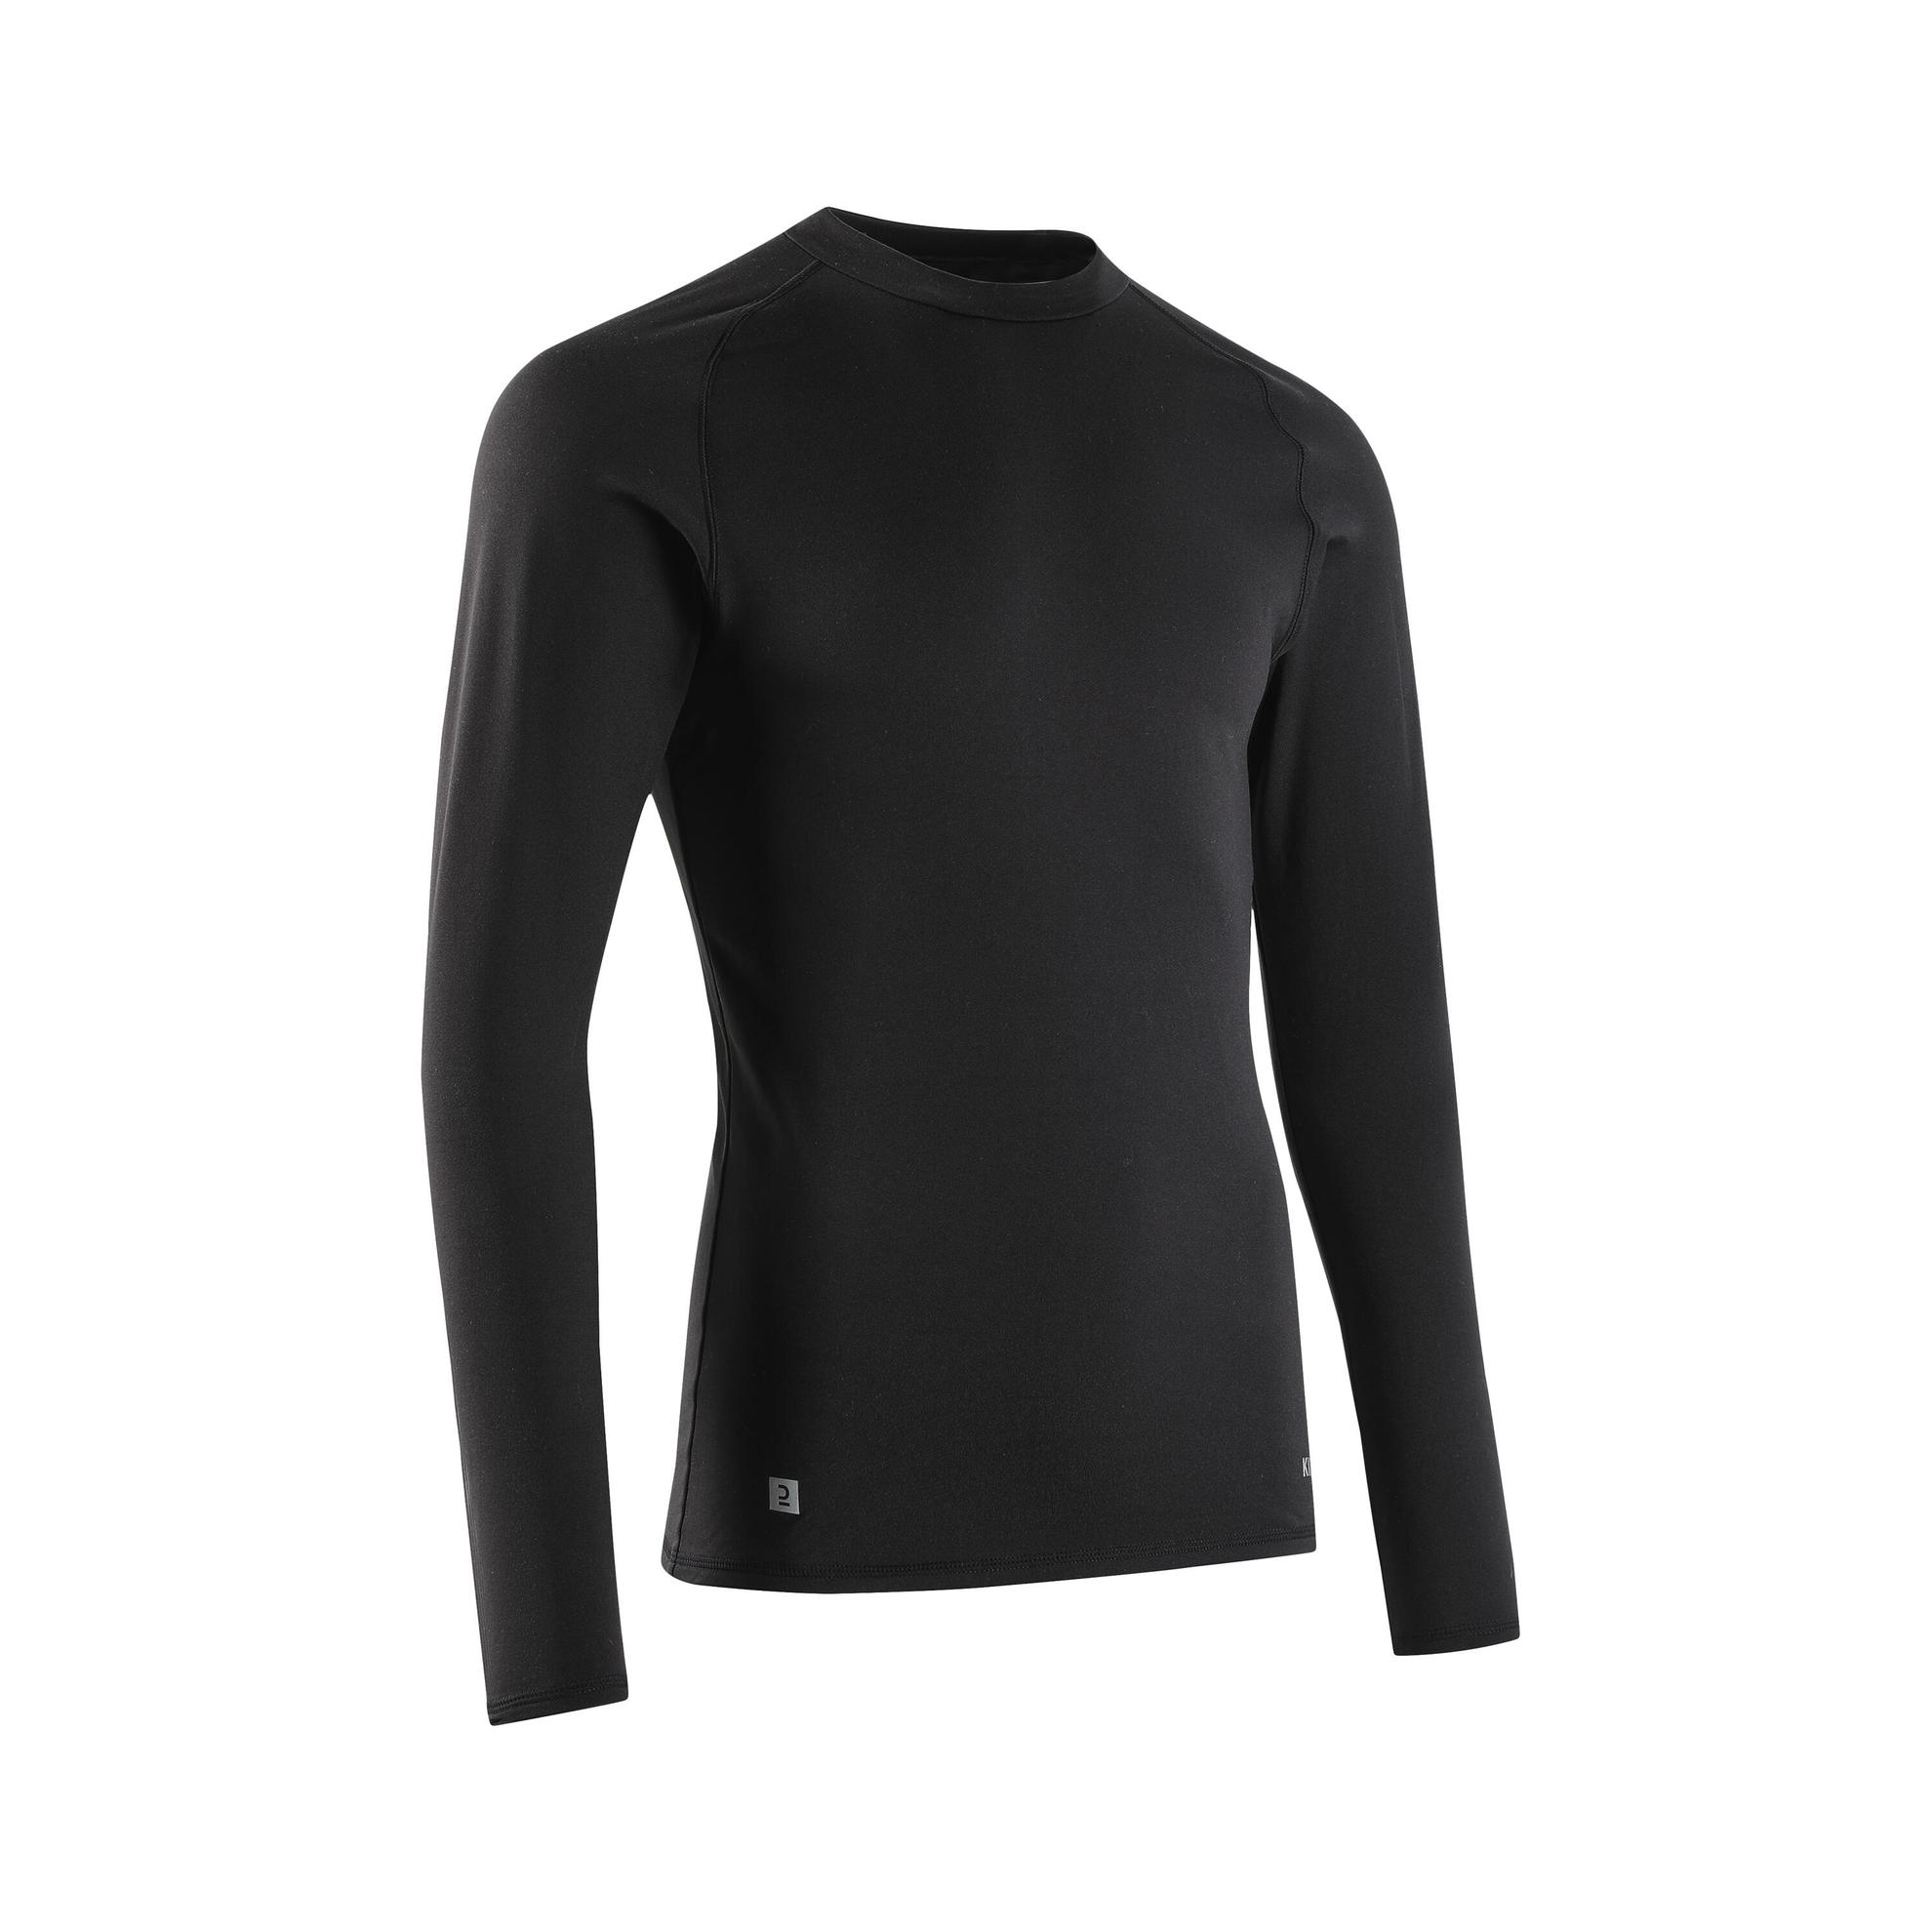 Damen/Herren Fussball Funktionsshirt langarm wärmend - Keepcomfort 100 schwarz für 12,99€ in Decathlon